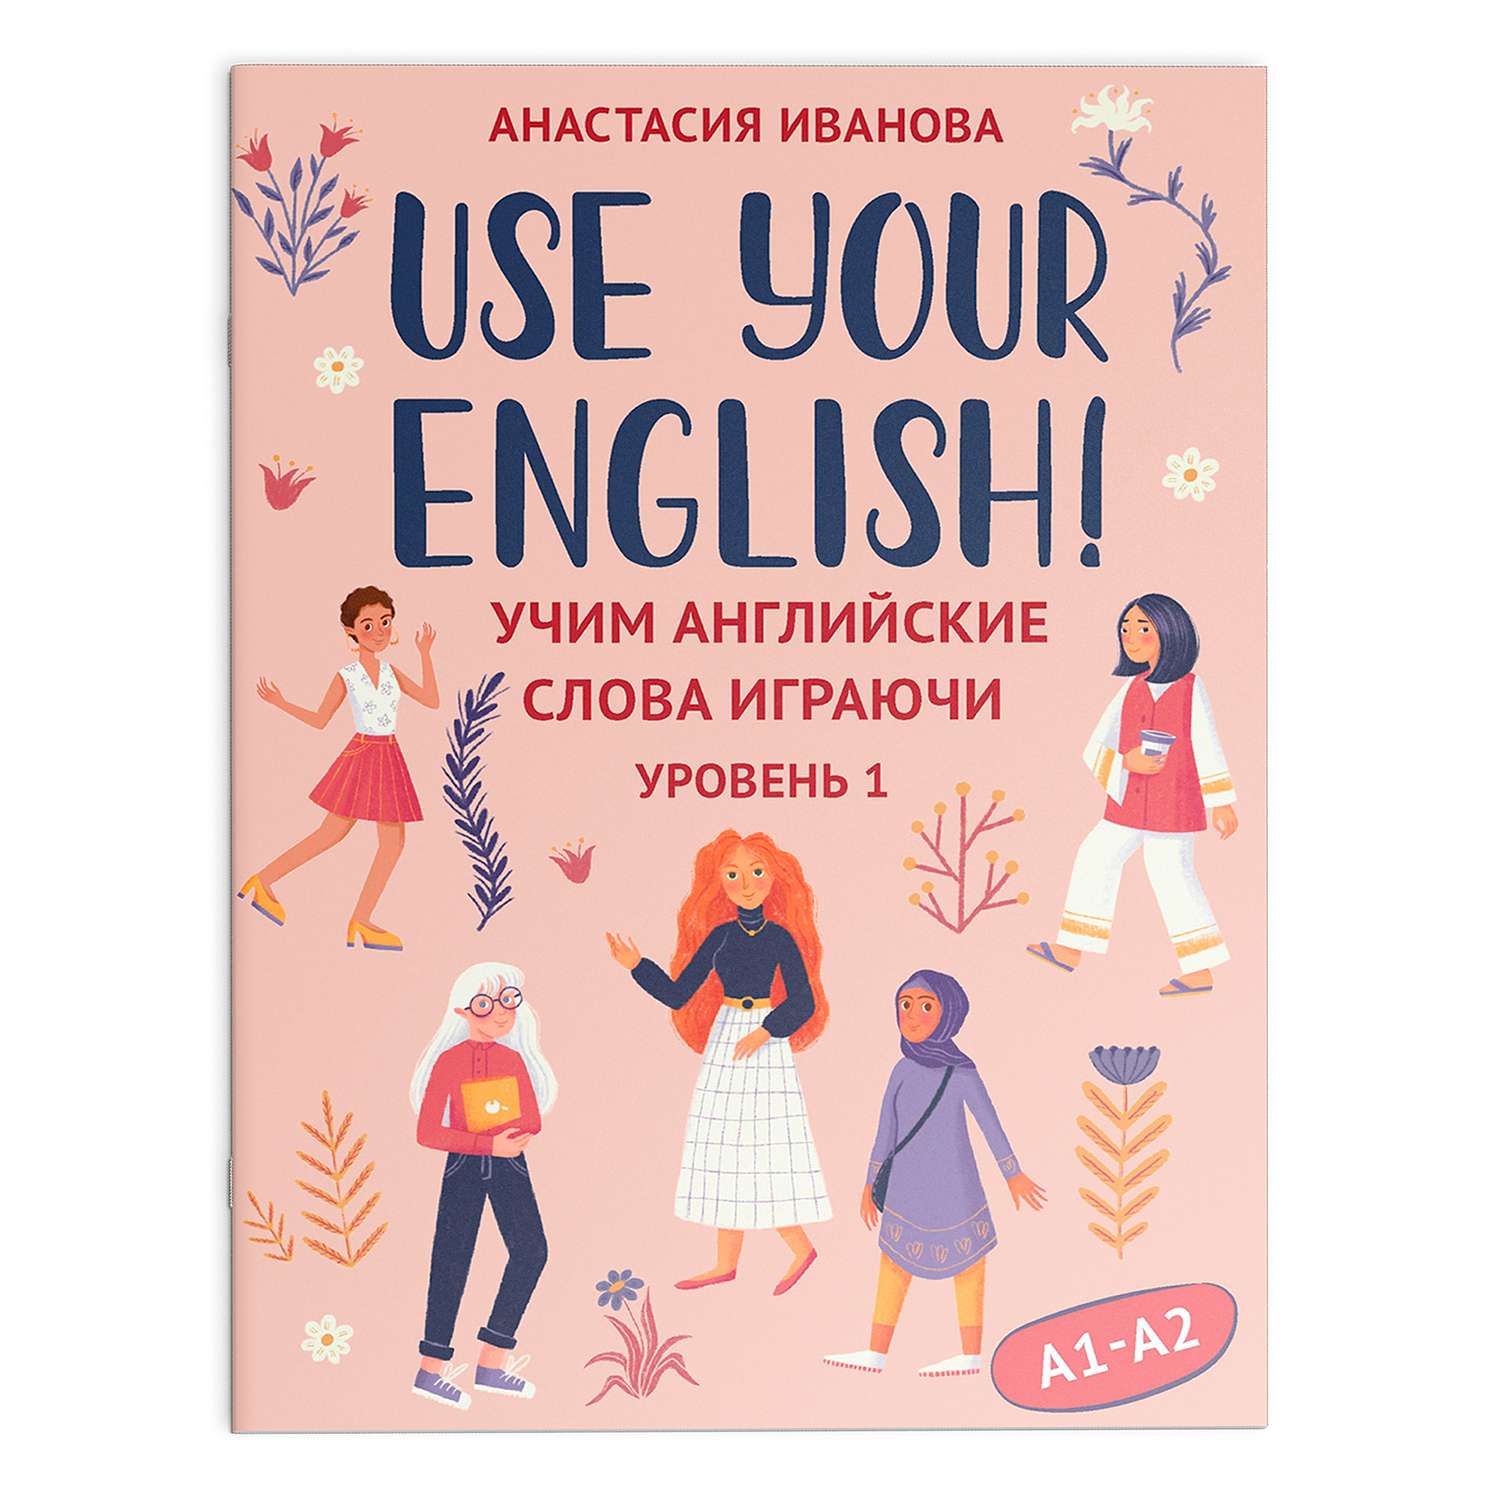 Книга ТД Феникс Use your English! Учим английские слова играючи. Уровень 1 - фото 2